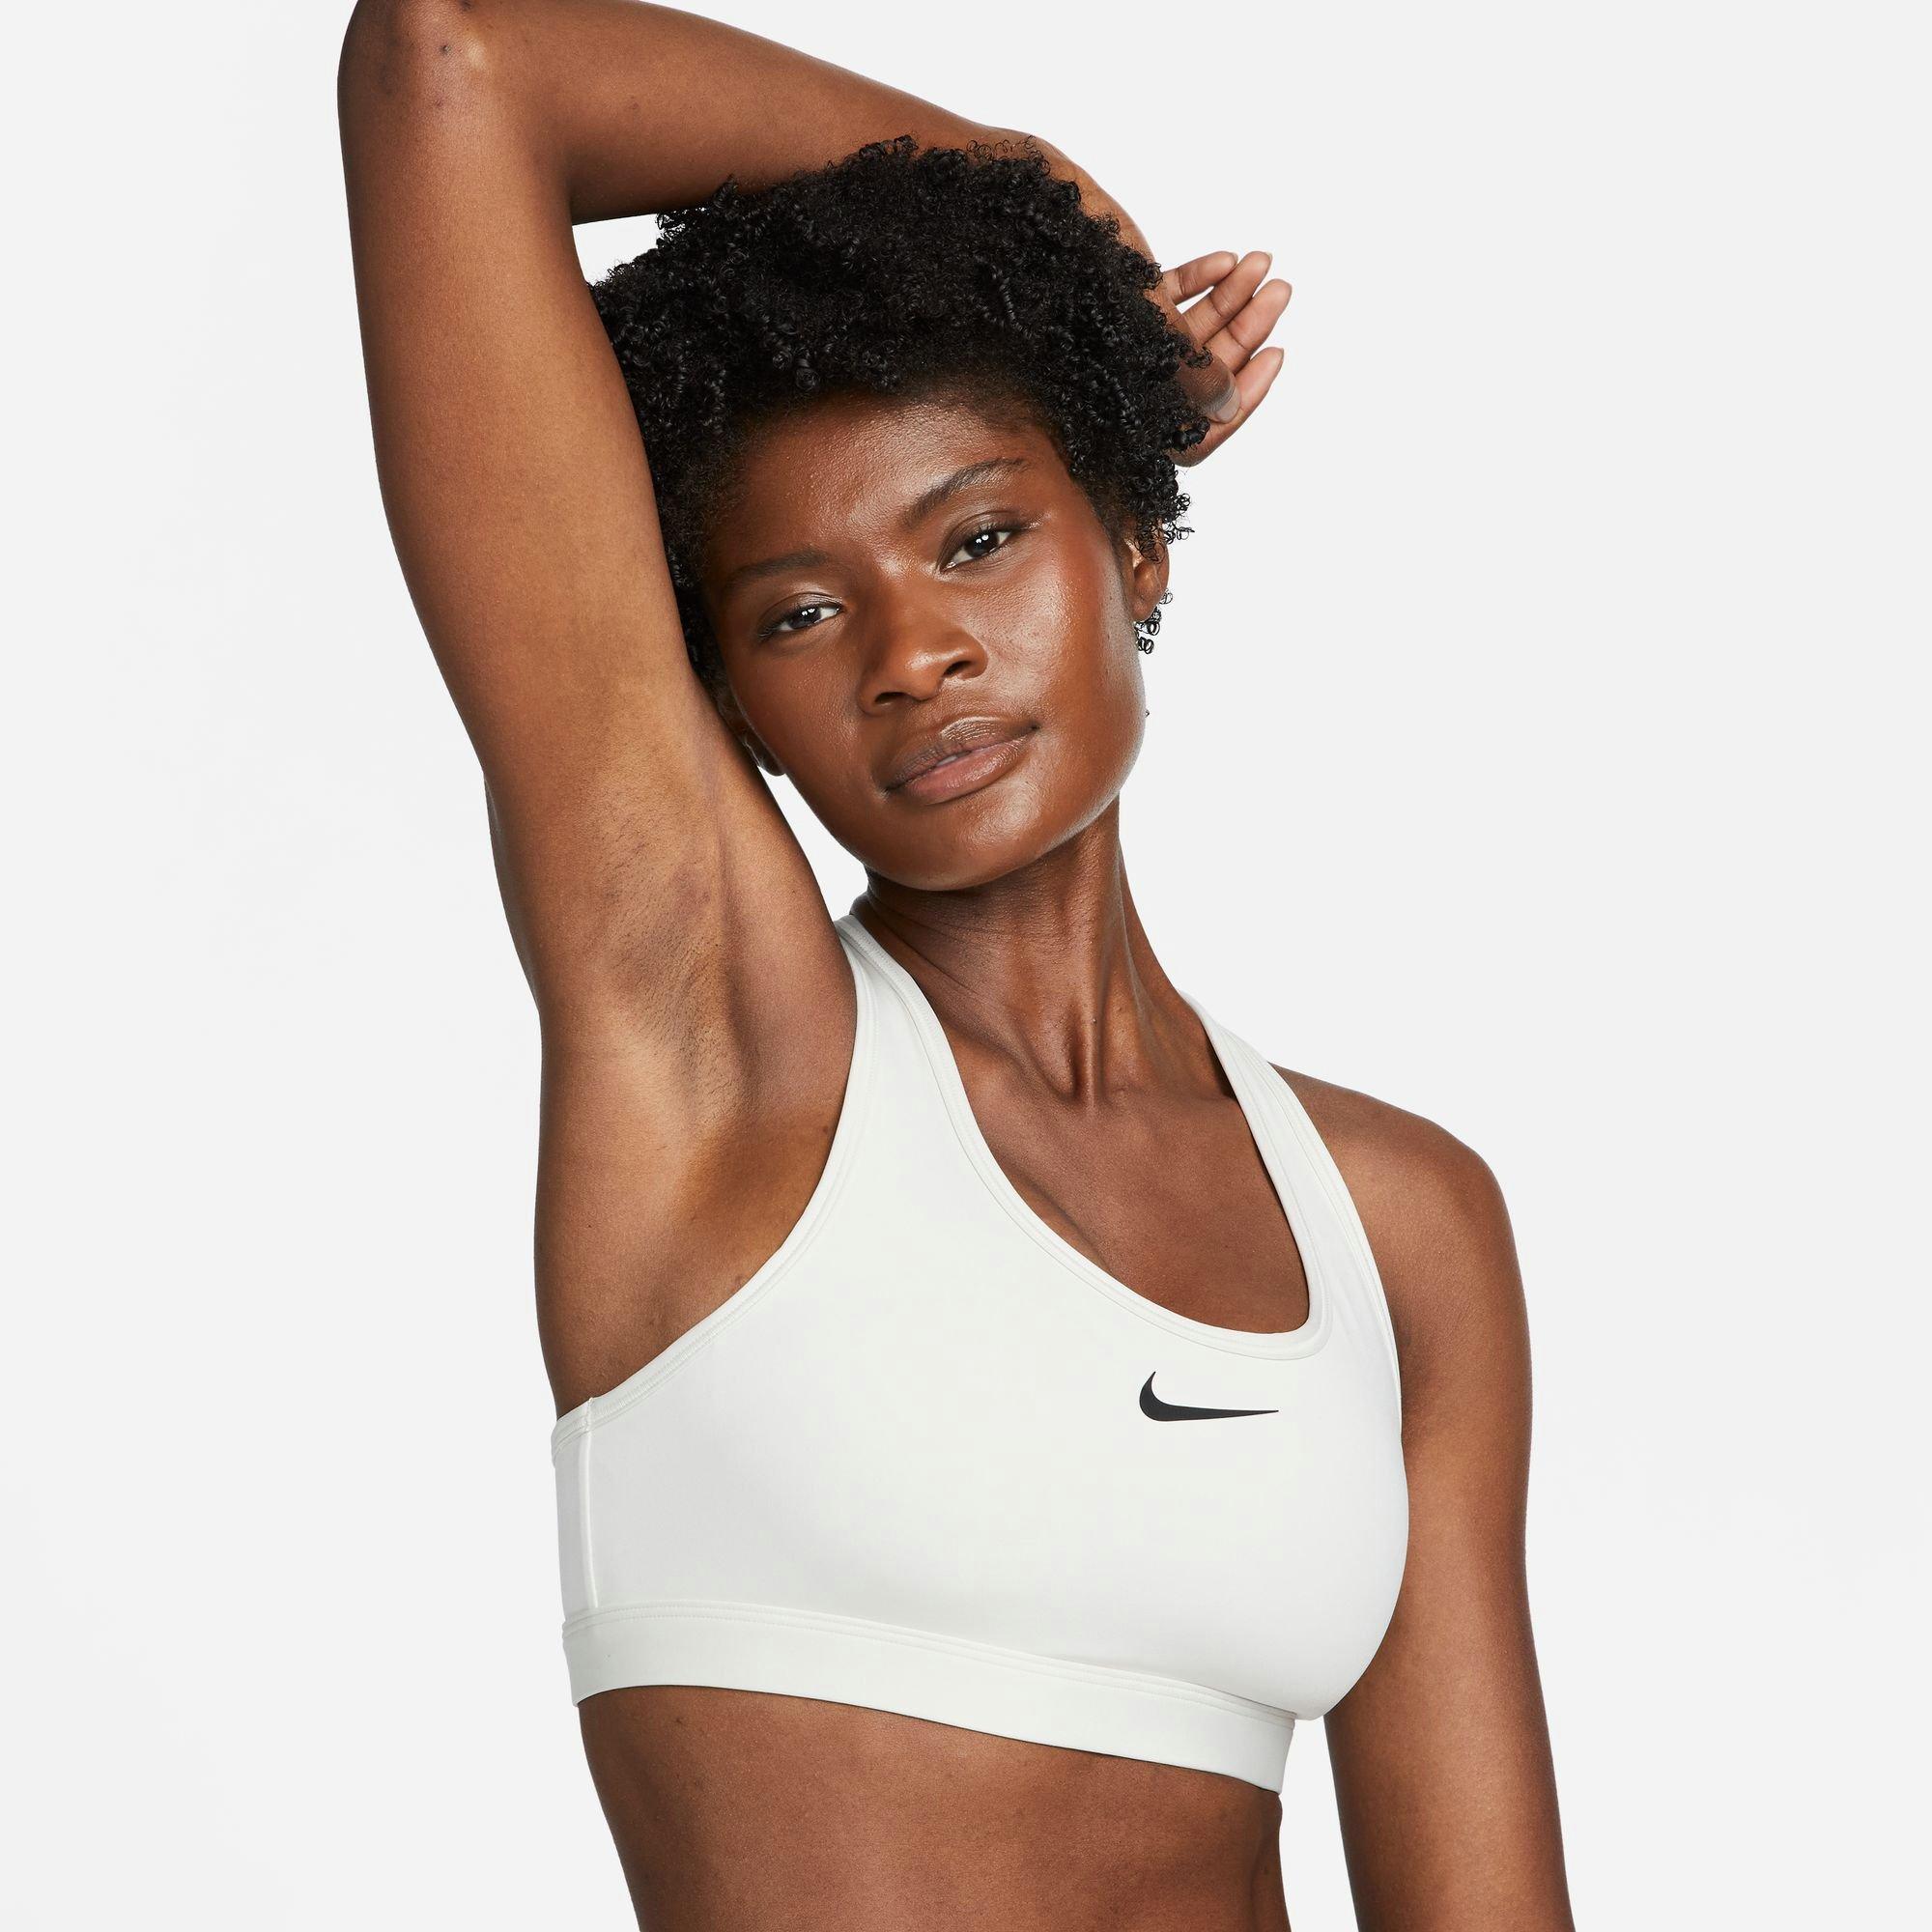 Women's Dri-Fit Swoosh Medium Support Bra from Nike